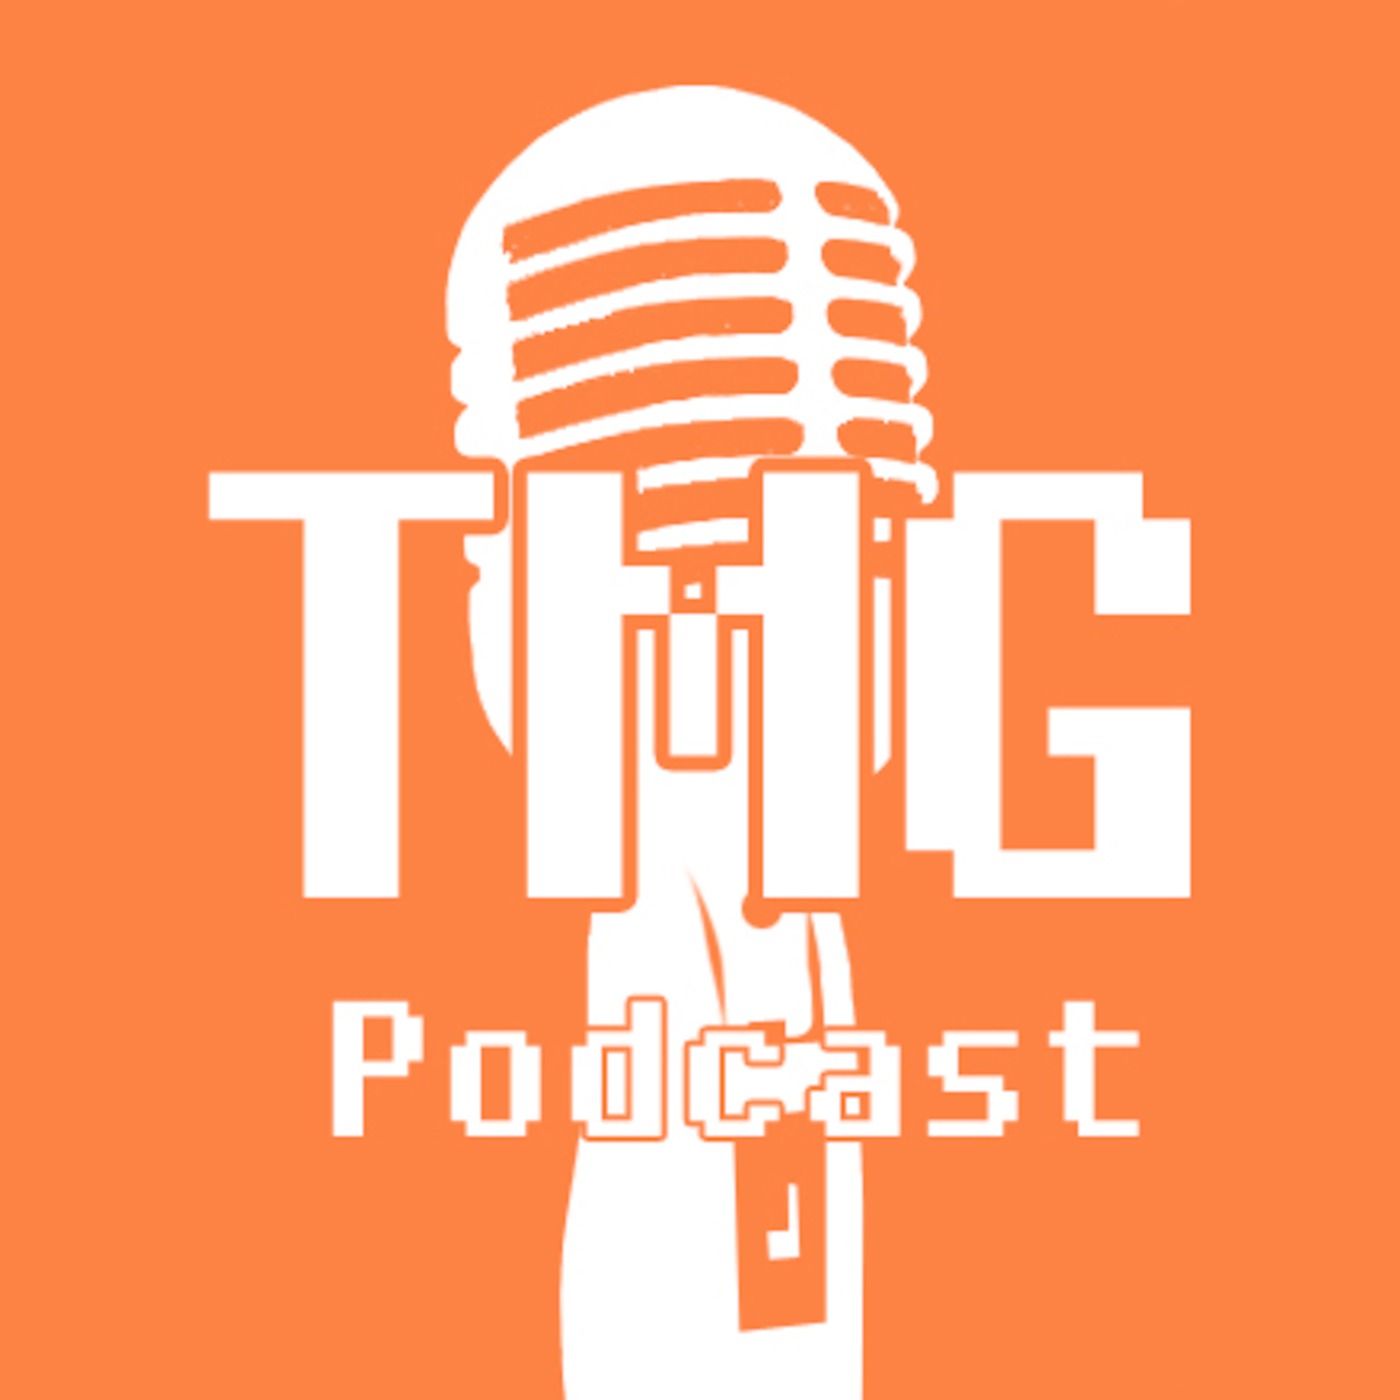 Tmg Podcast Listen Via Stitcher For Podcasts 